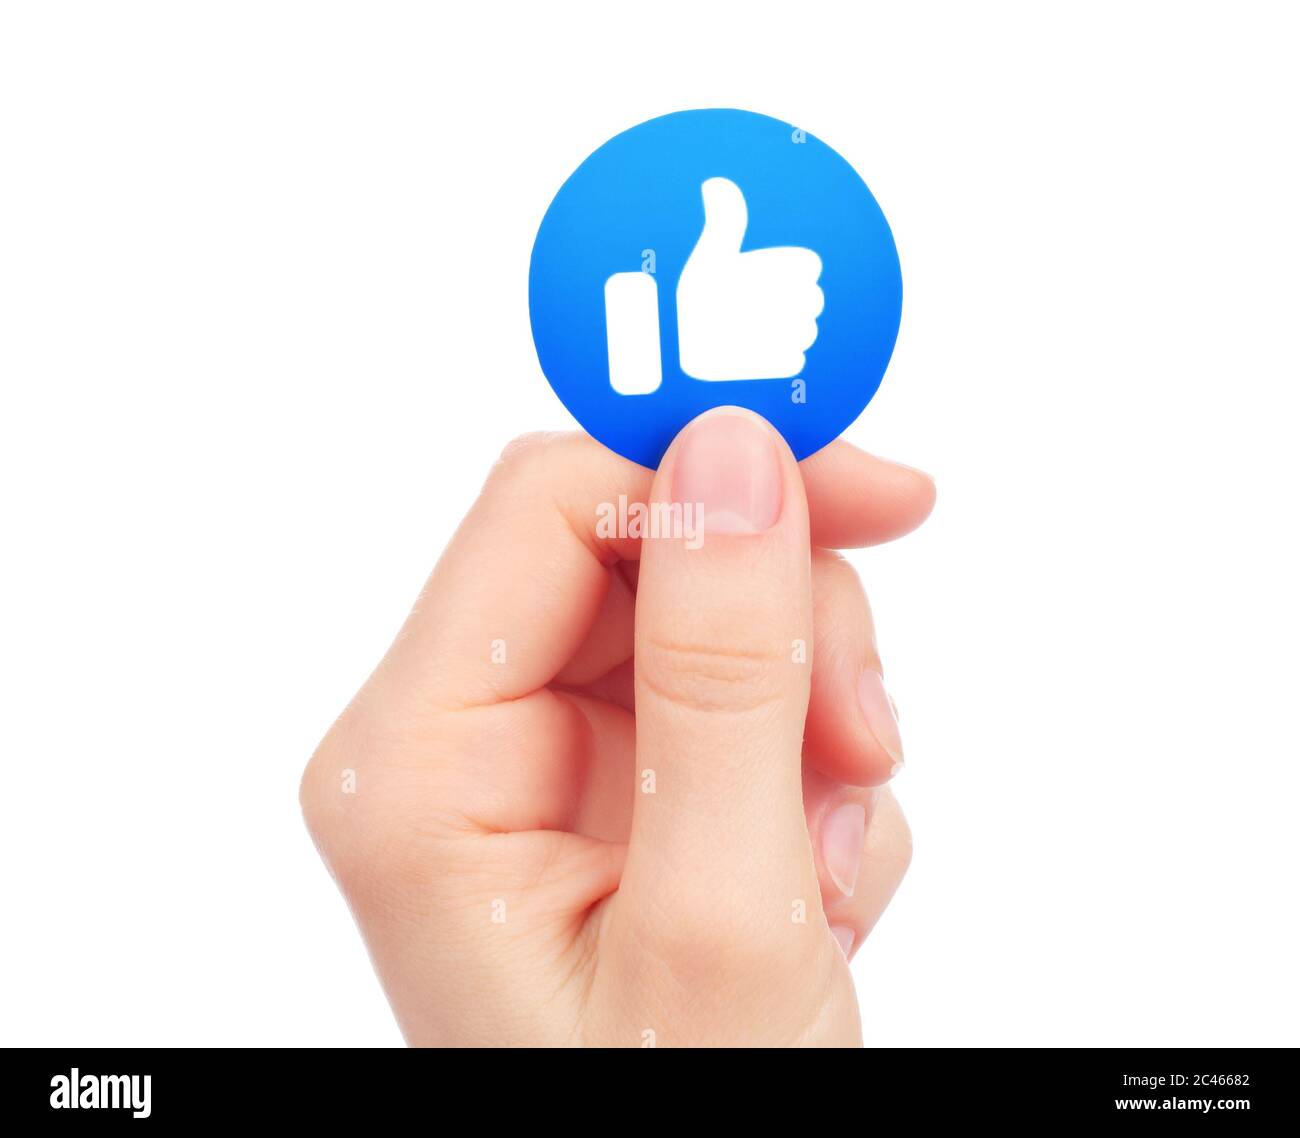 Kiew, Ukraine - 15. Mai 2019: Hand hält Neues Facebook wie empathische Emoji-Reaktion, gedruckt auf Papier. Facebook ist ein bekannter Social-Networking-Anbieter Stockfoto